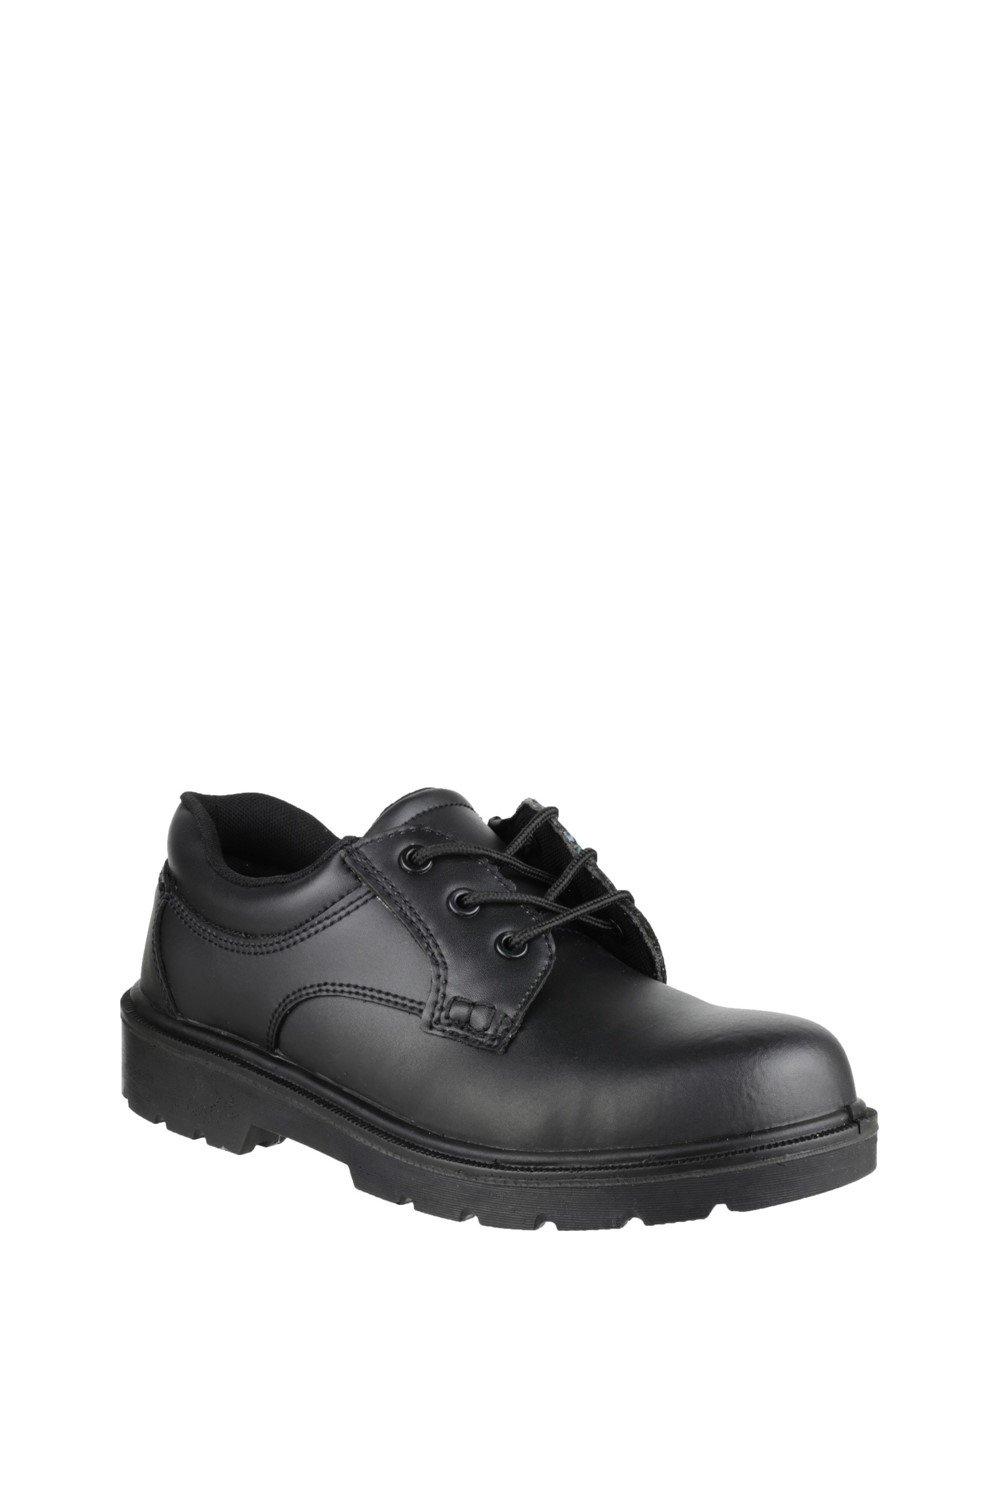 цена Защитная обувь 'FS38C' Amblers Safety, черный